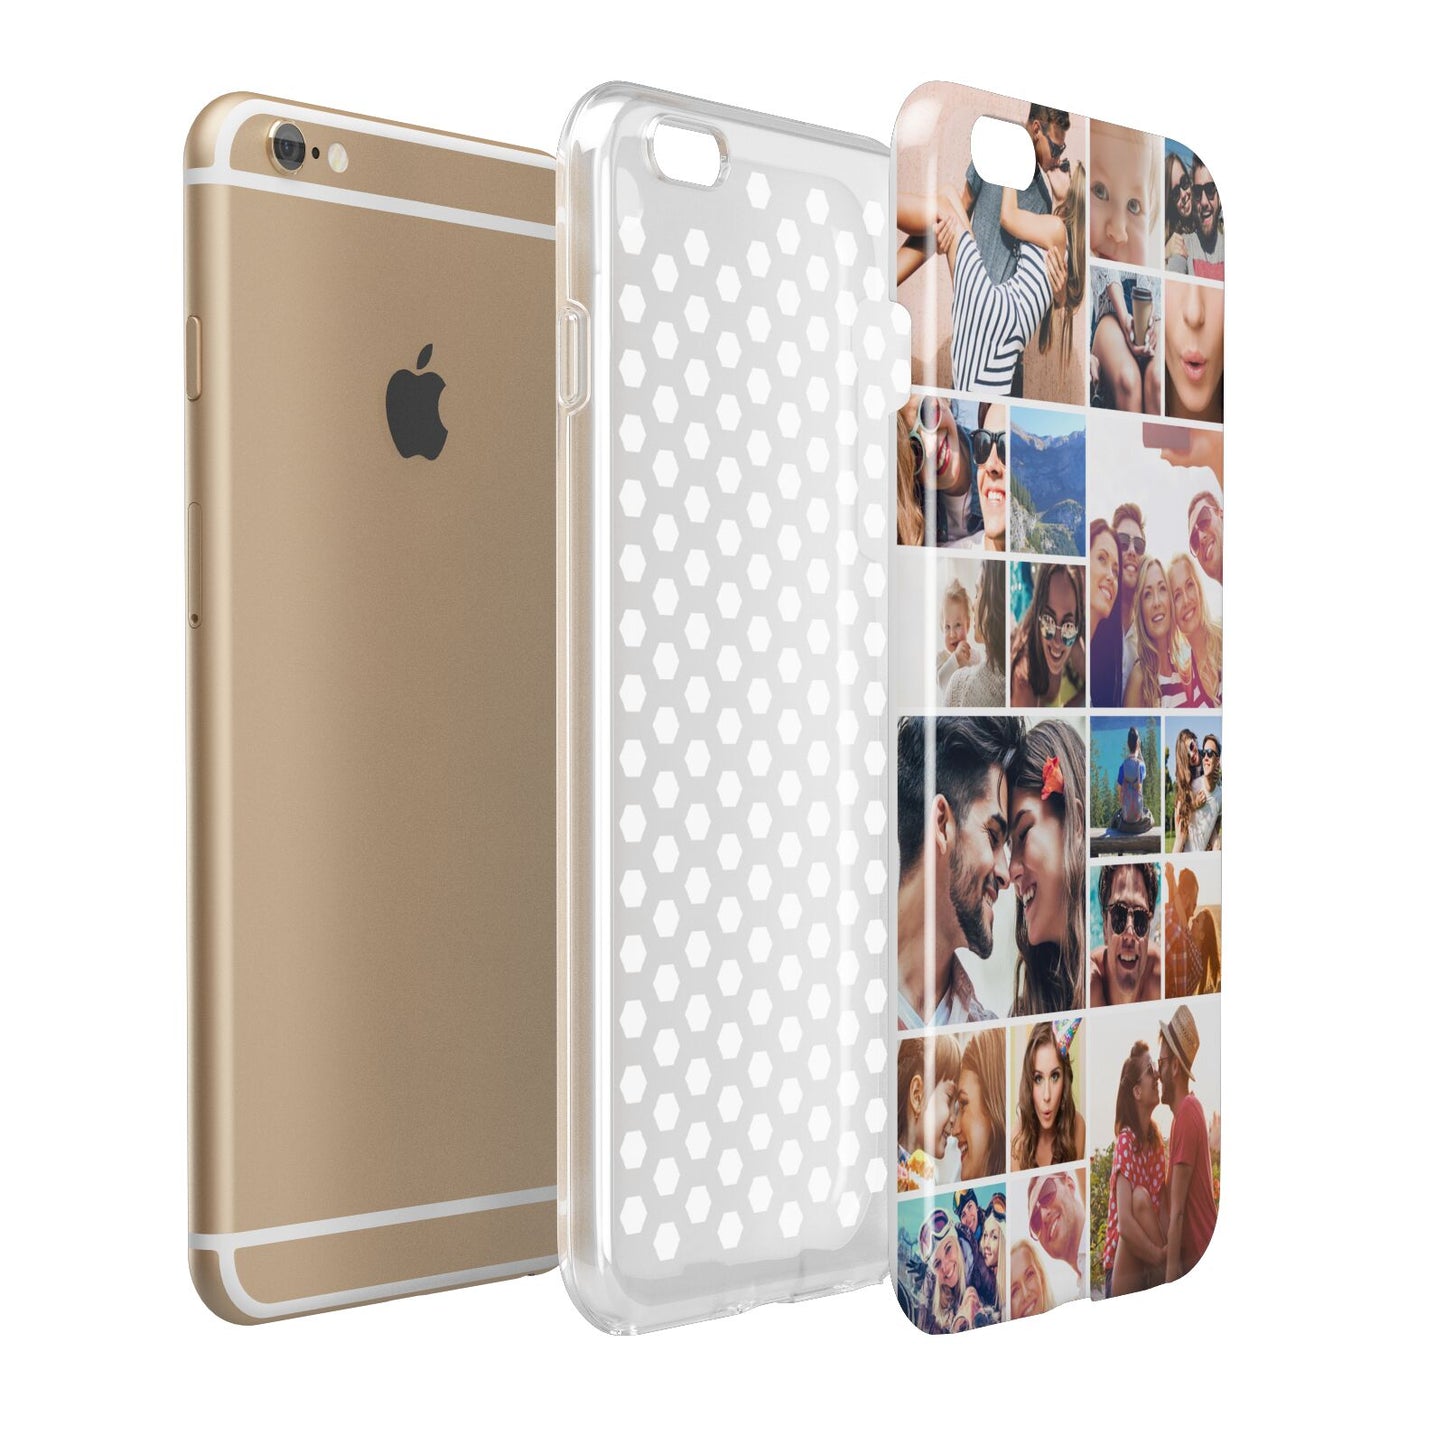 Photo Grid Apple iPhone 6 Plus 3D Tough Case Expand Detail Image